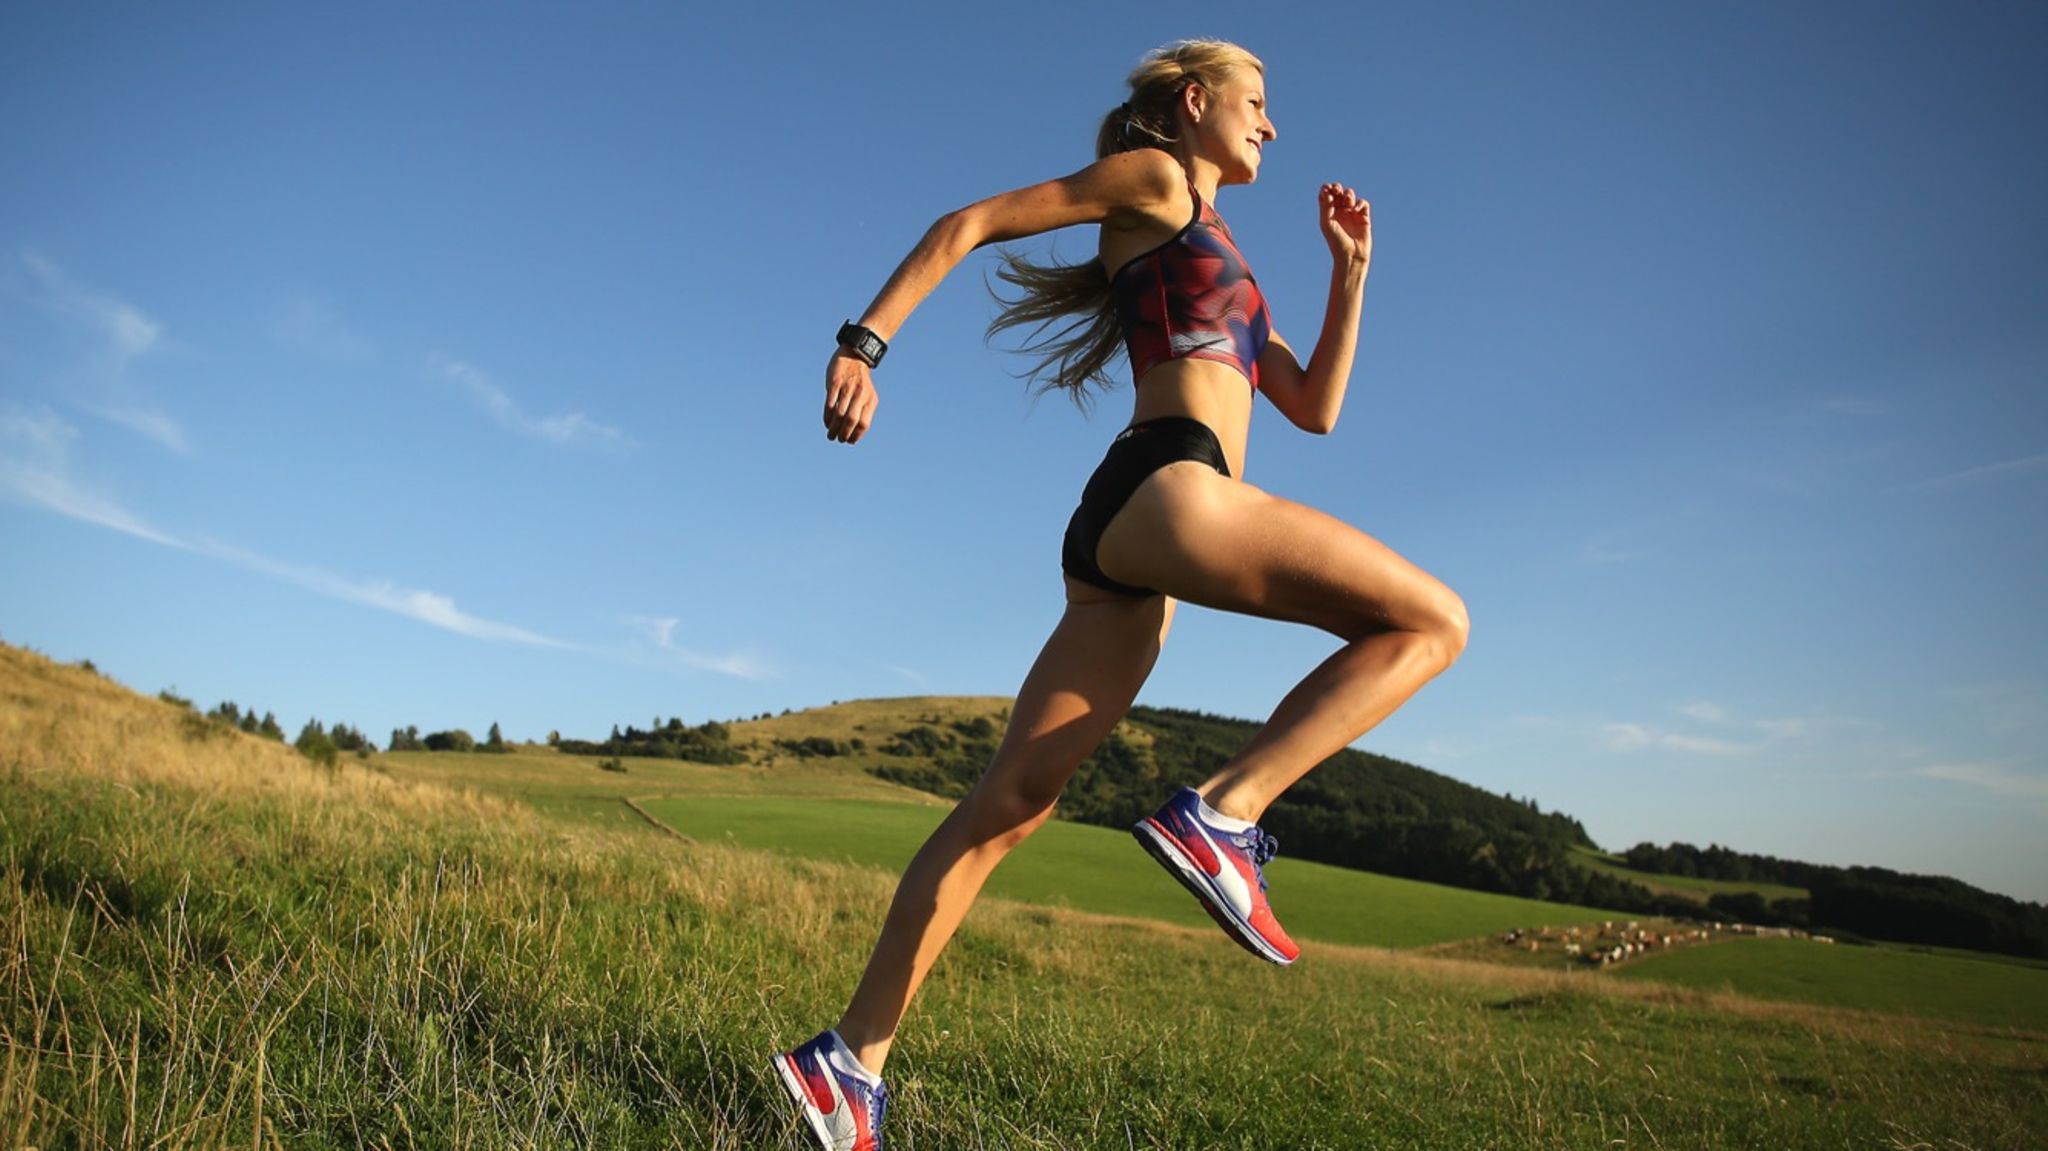 Laufen: Unsere Tipps & Trainingspläne zum Joggen - FIT FOR FUN